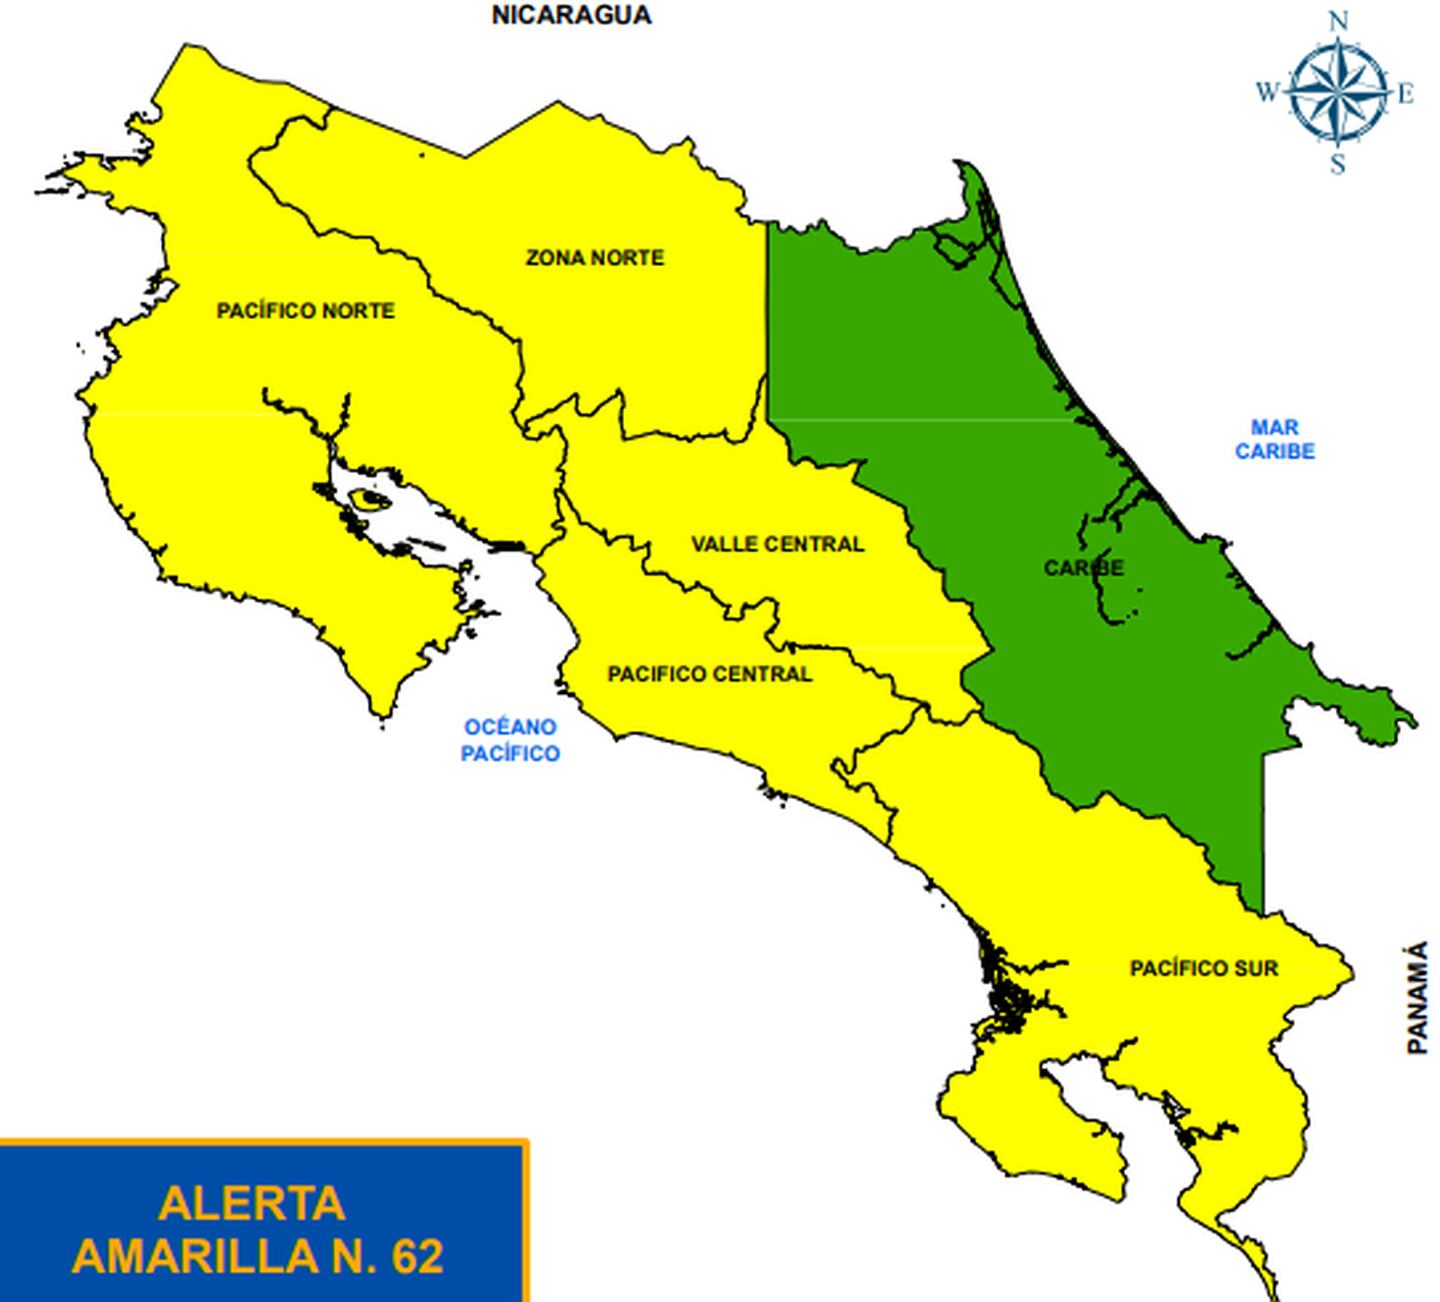 Todo el territorio está con alertas amarilla y verde, dependiendo de lo que ocurra el domingo, ciertas zonas podrían pasar a alerta naranja. Imagen: CNE.